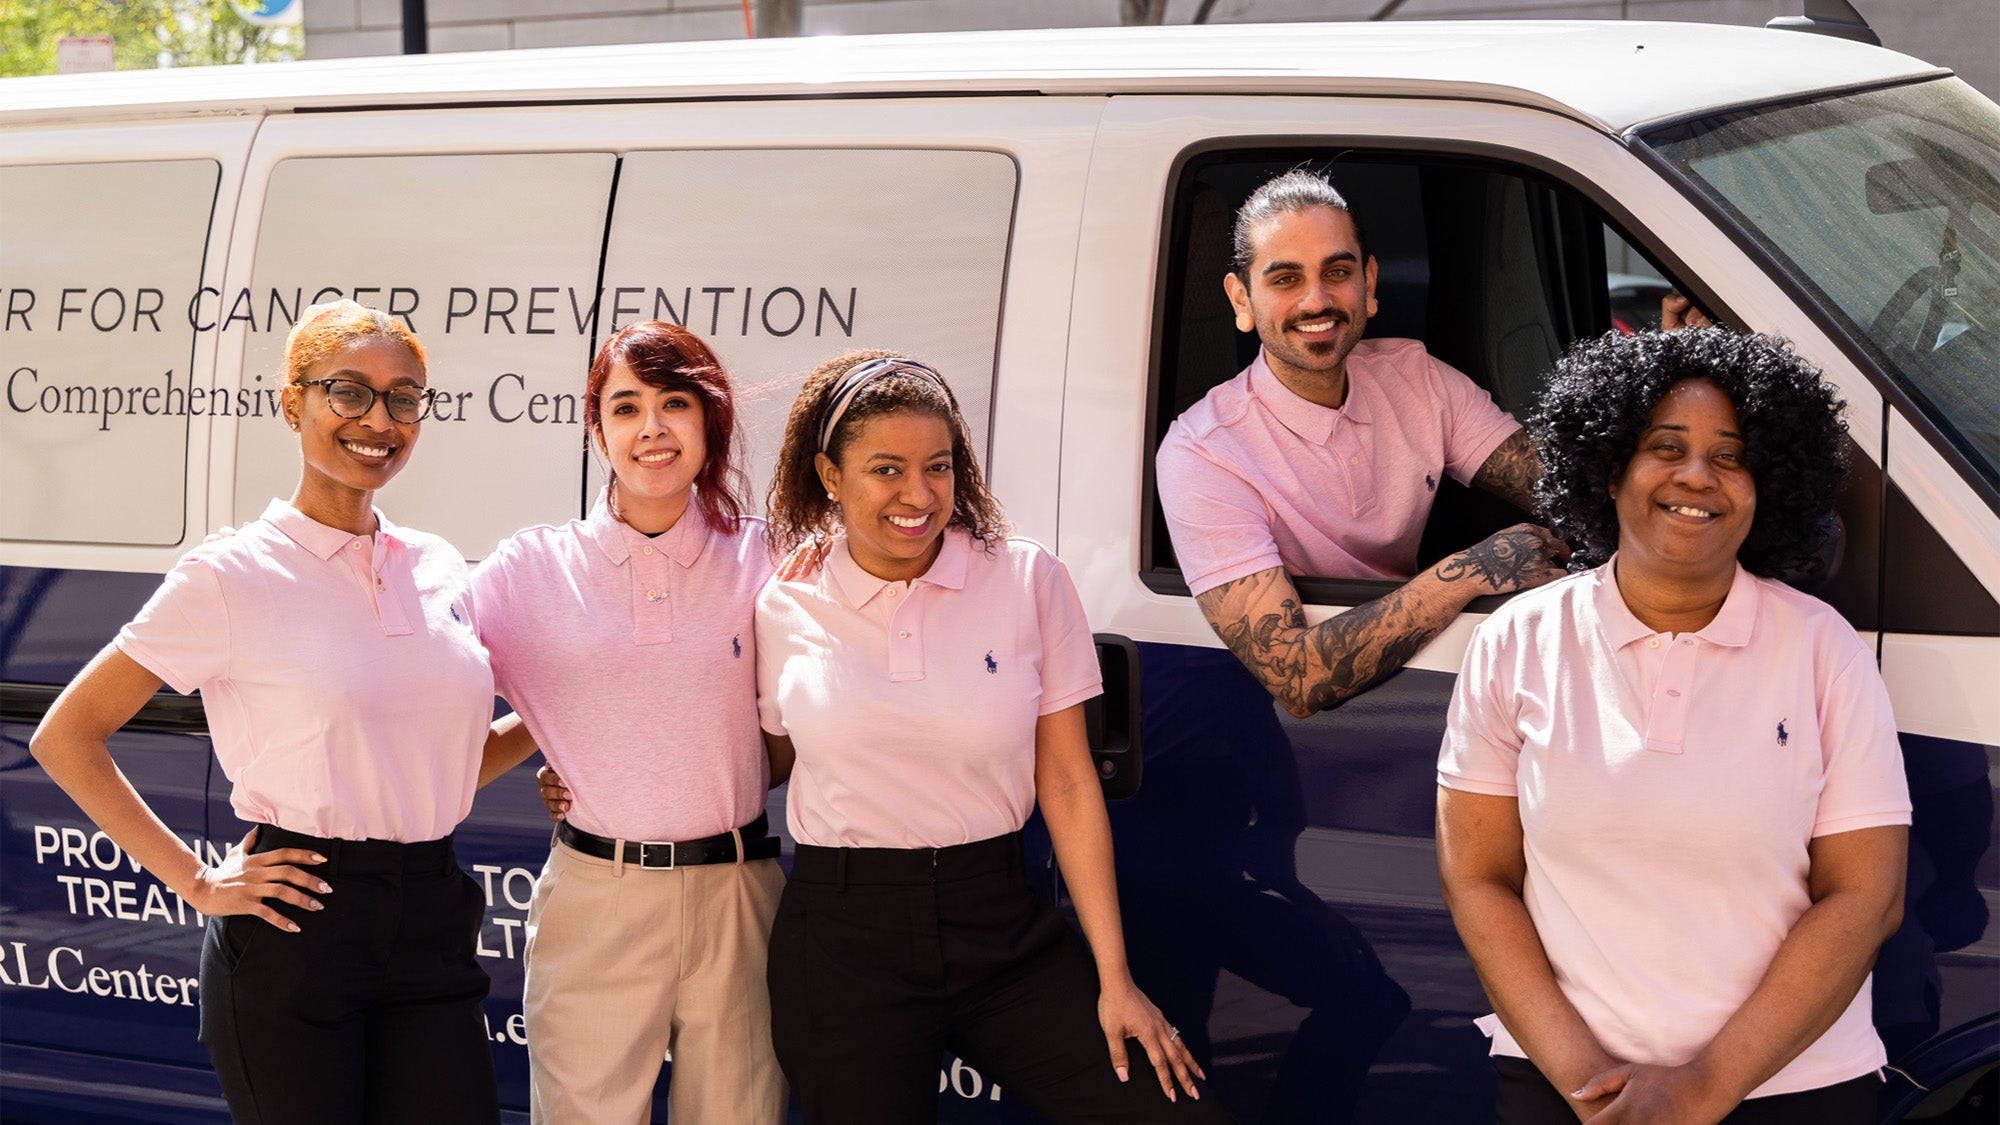 Five patient navigators pictured with the van for the Ralph Lauren Center